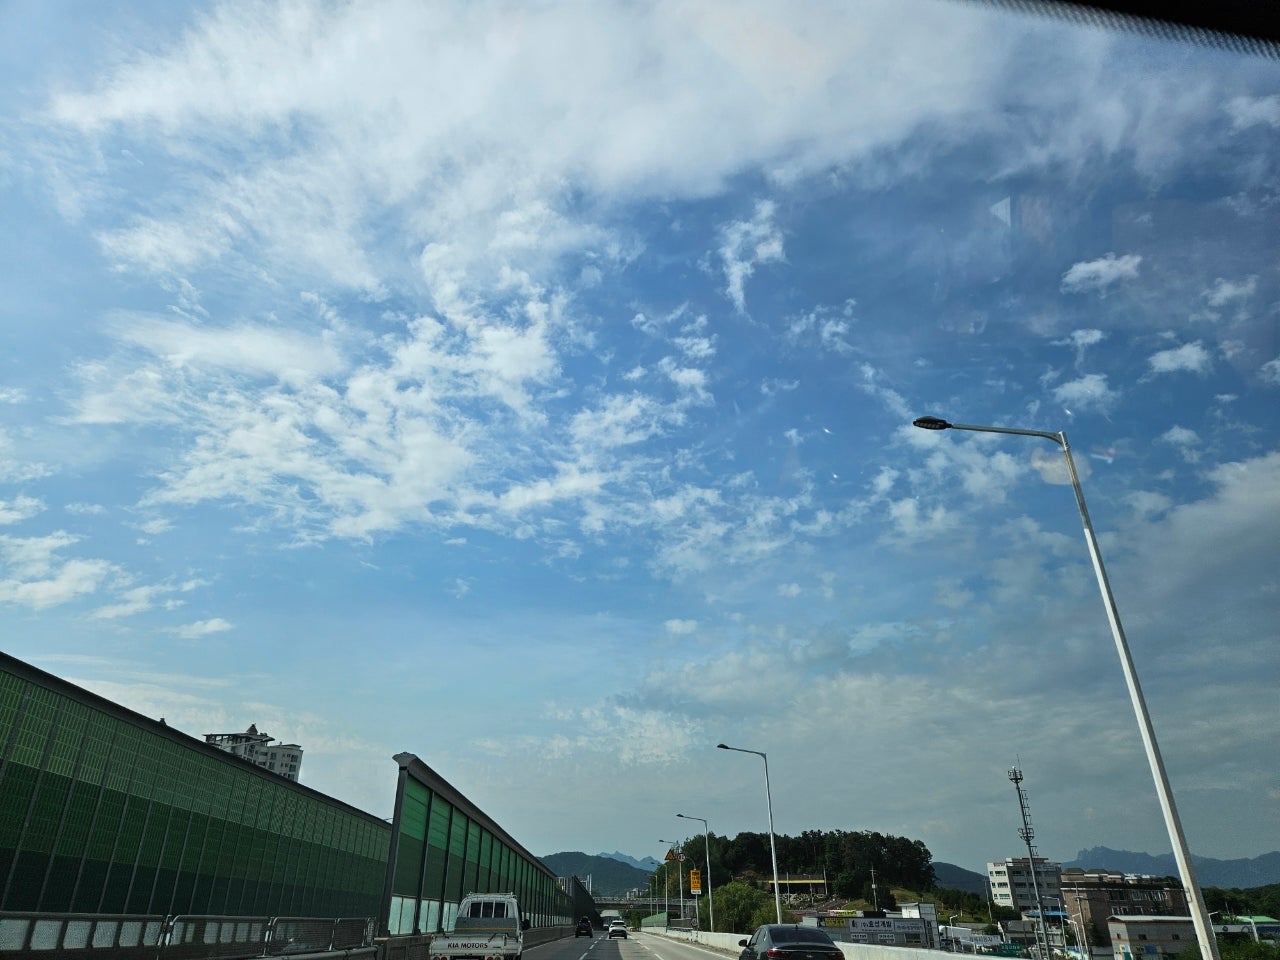 하늘, 야외, 구름, 자동차이(가) 표시된 사진

자동 생성된 설명